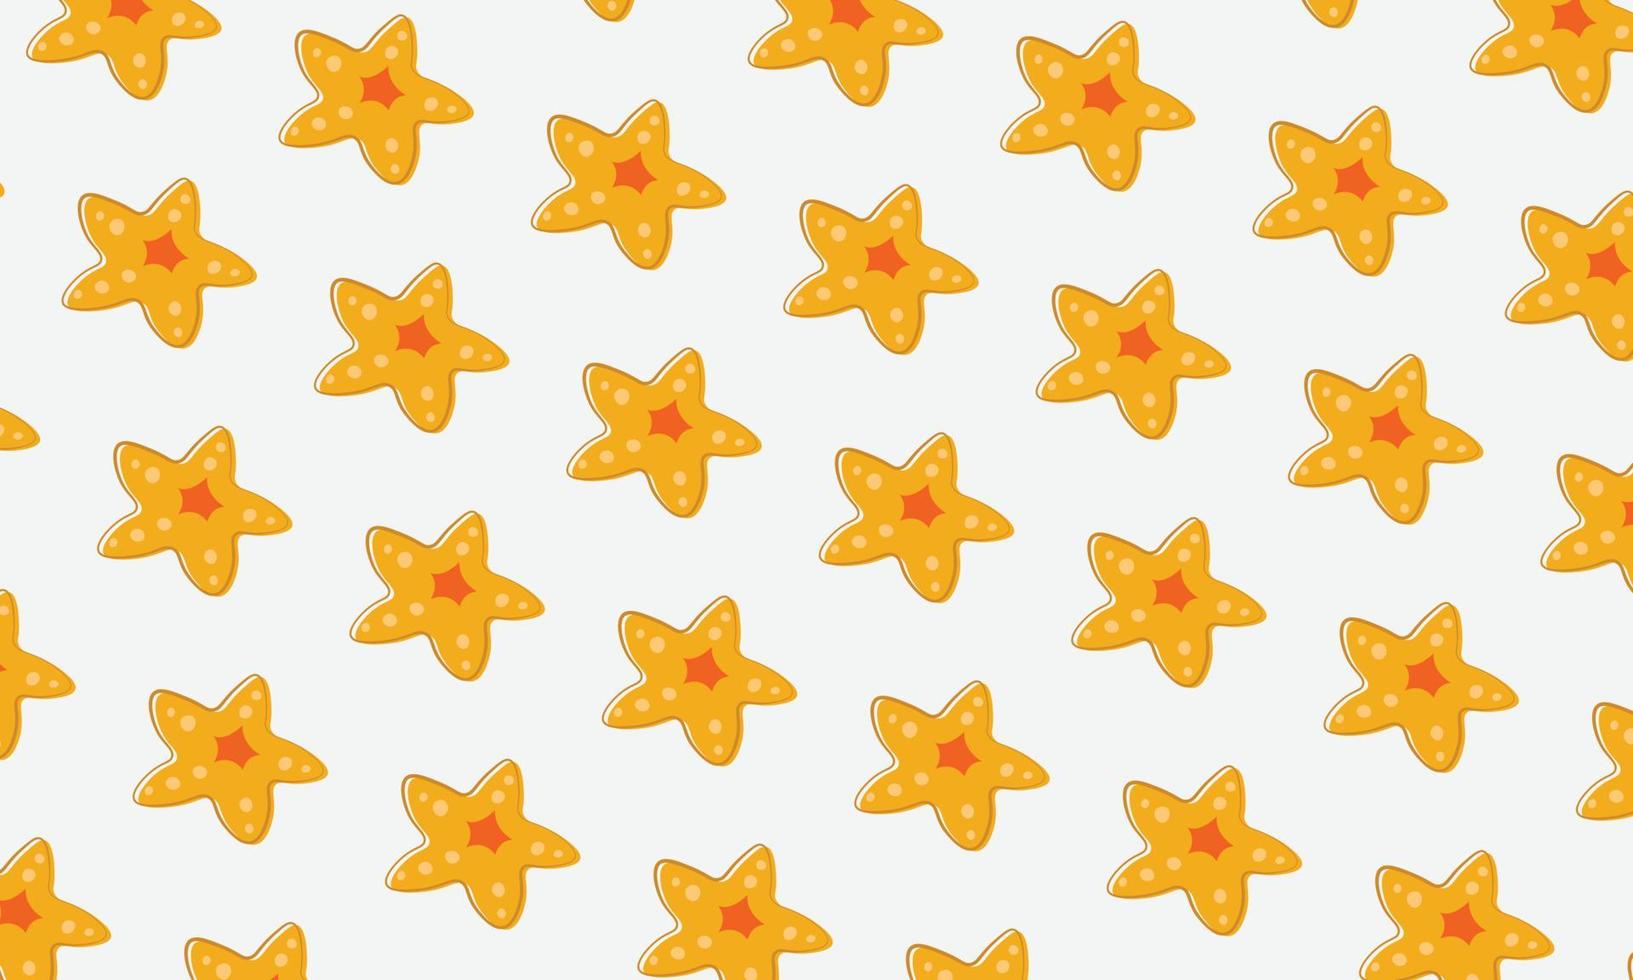 estrela do mar amarela abstrata em estilo doodle em fundo branco. vetor